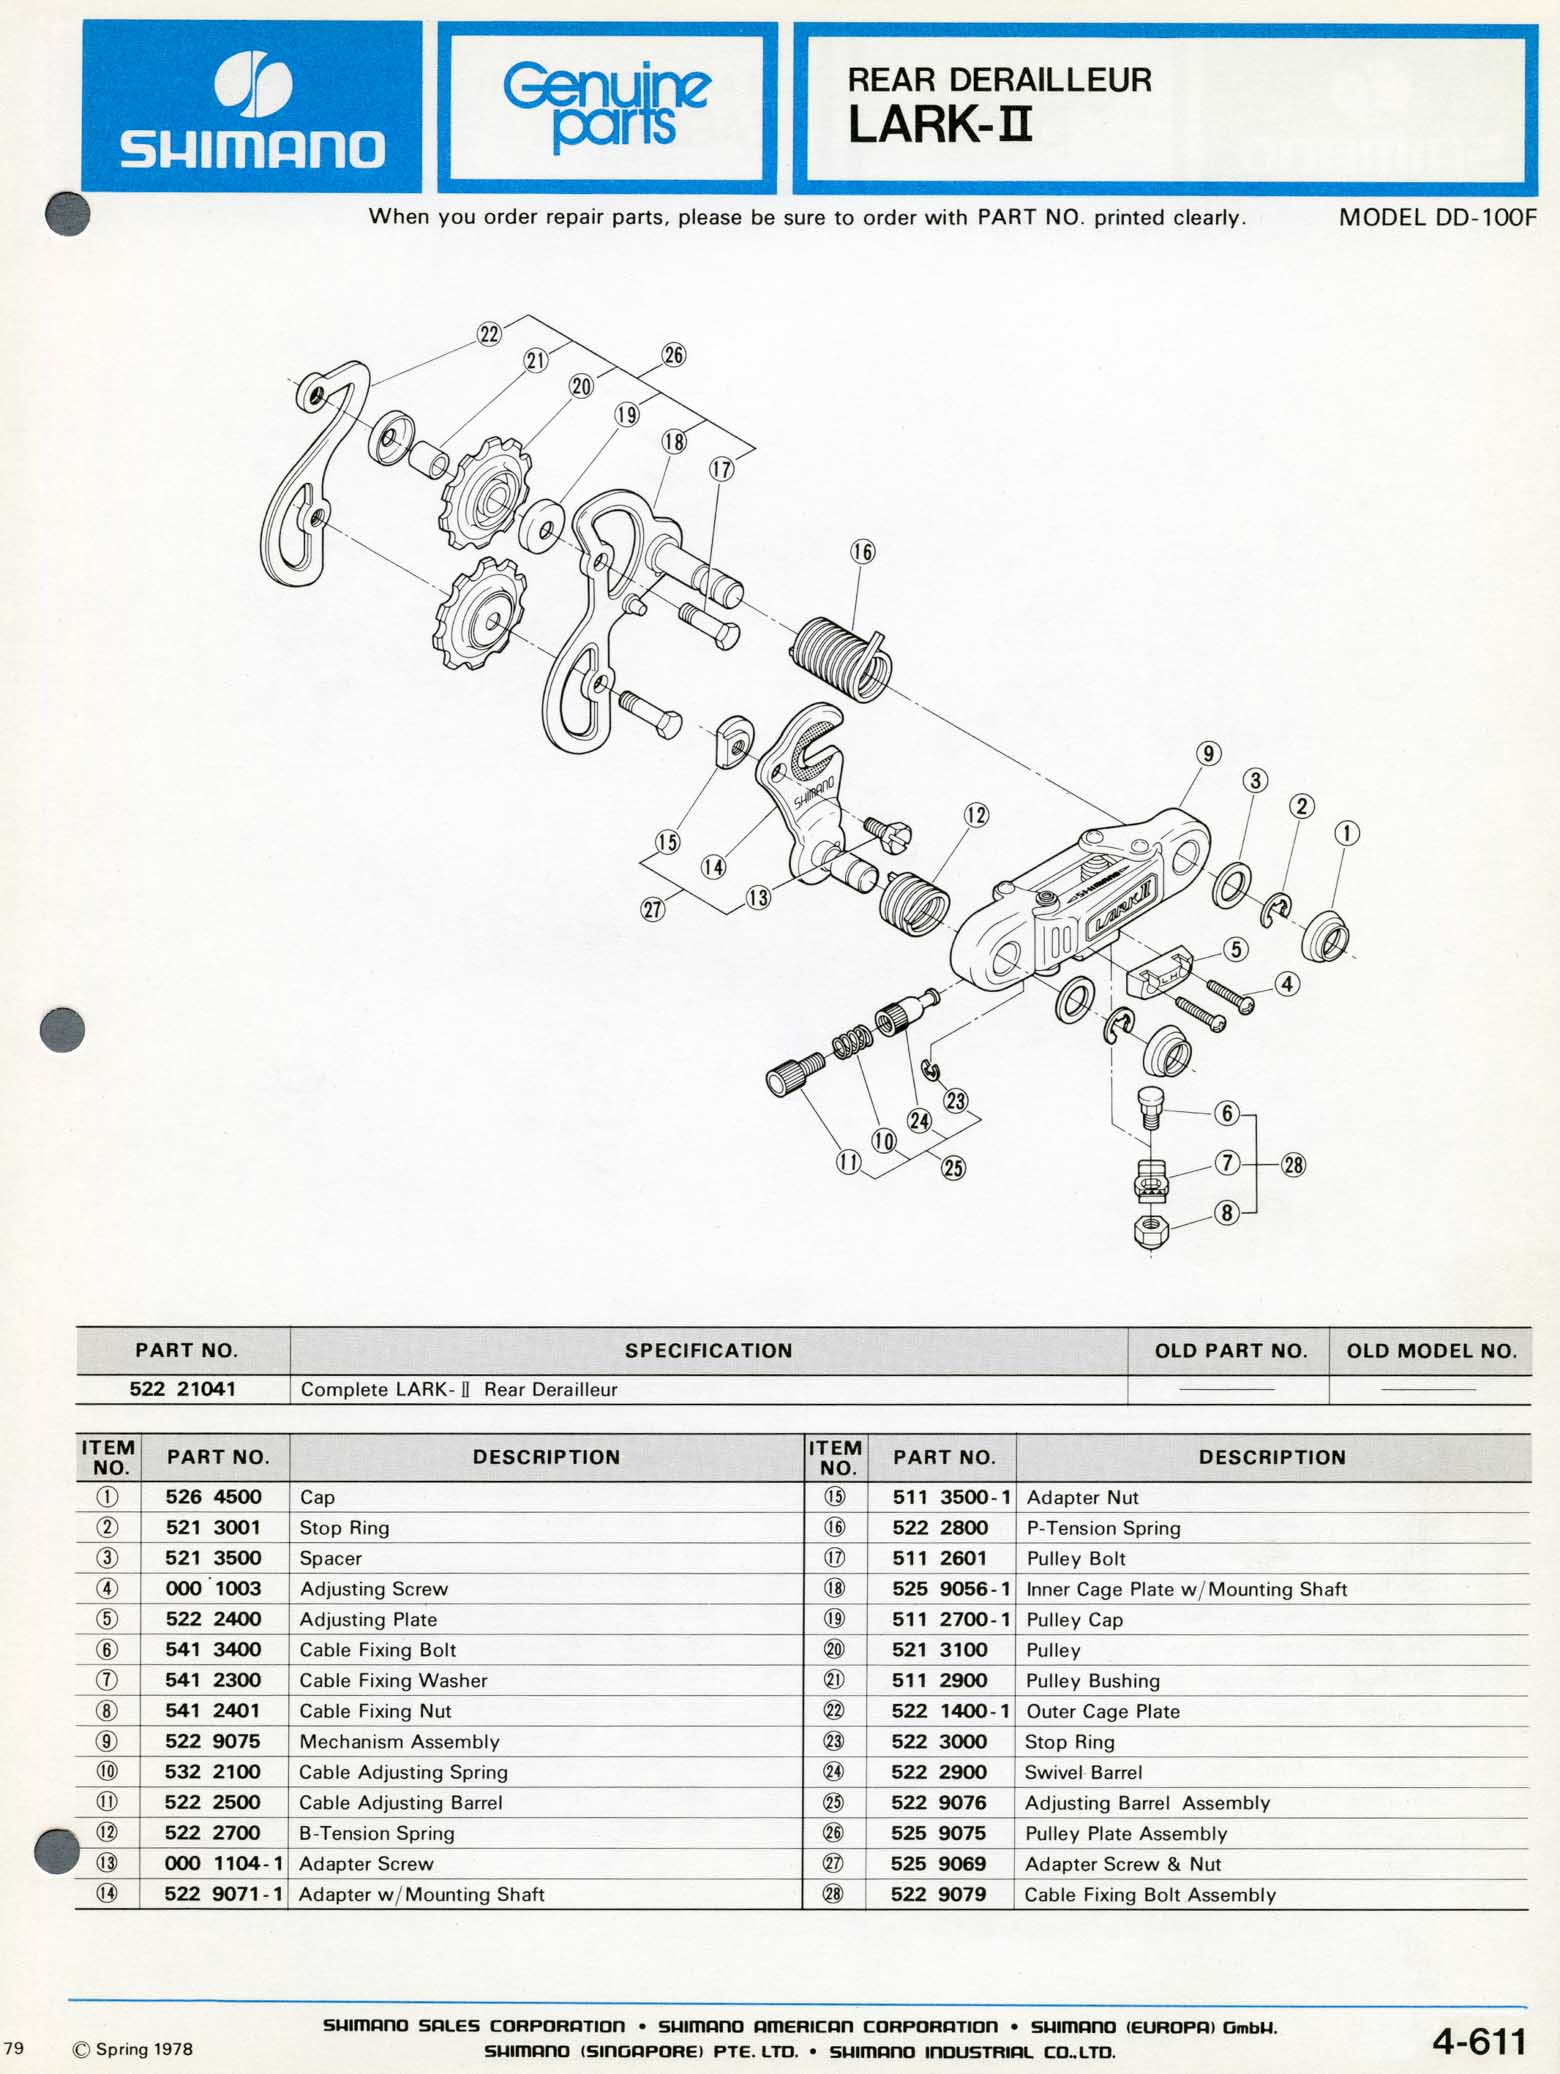 Shimano Bicycle Parts - 1978 scan 22 main image